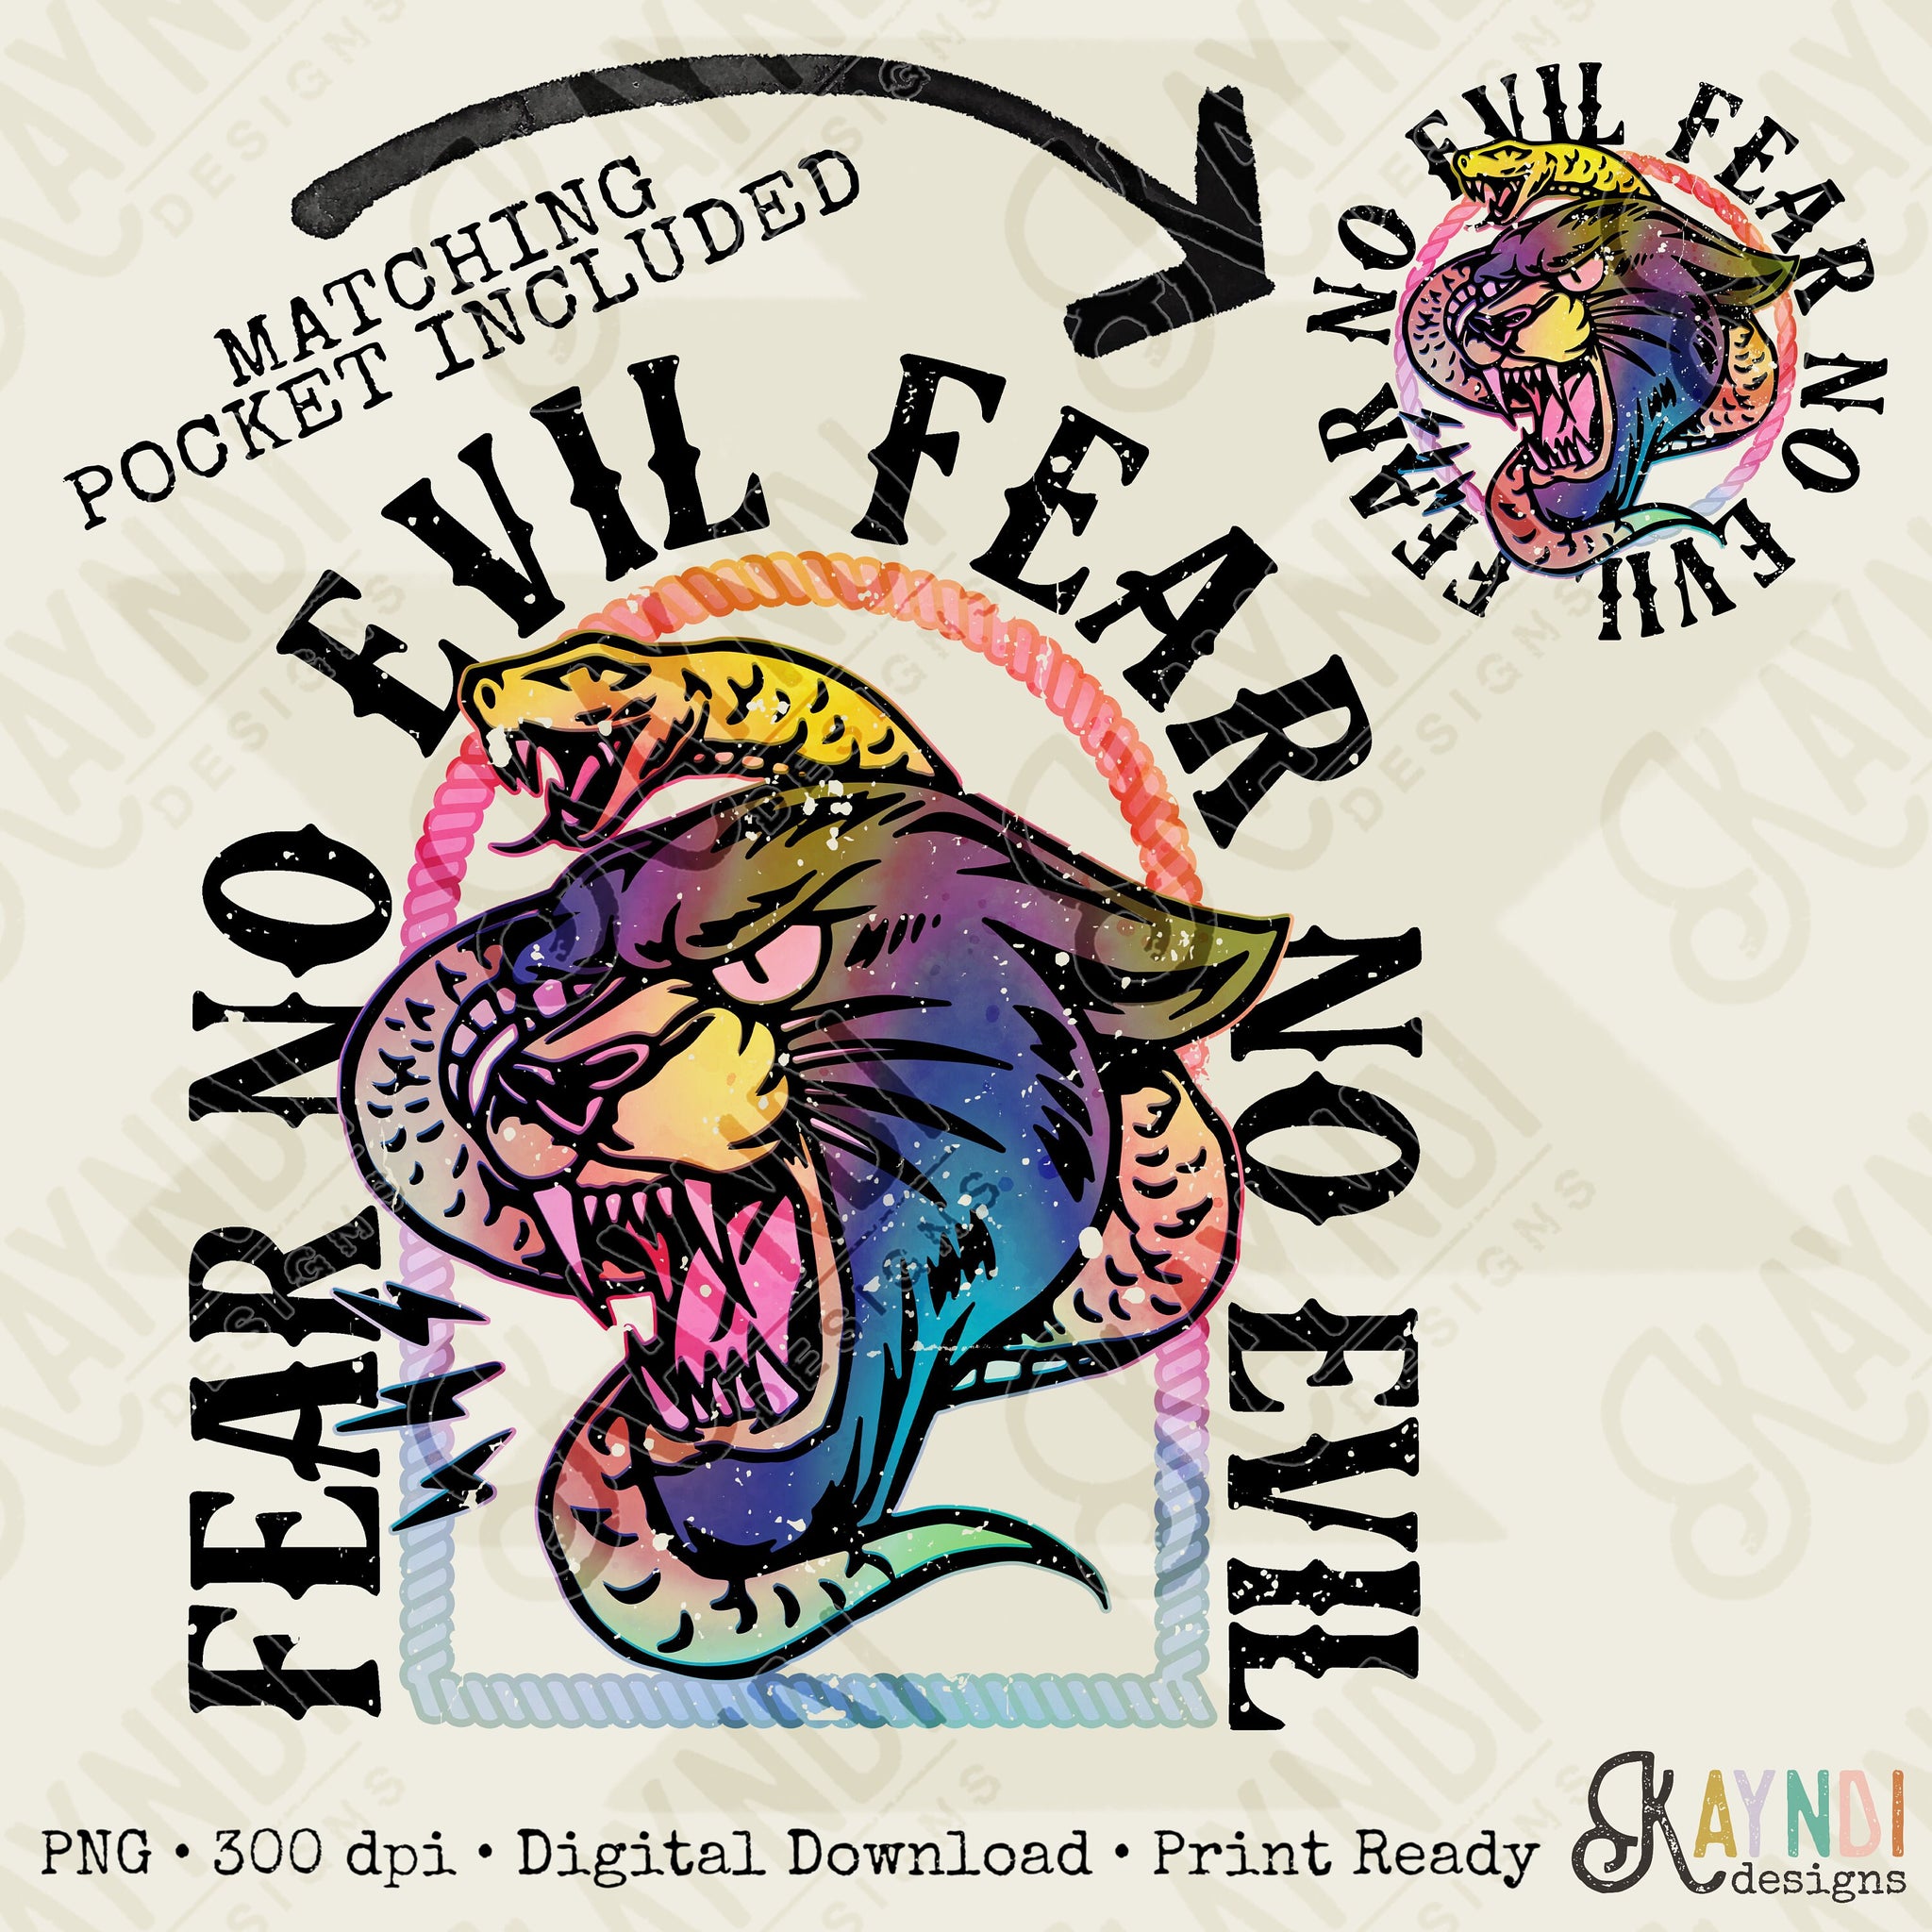 Fear No Evil Pocket Design Included Bright Sublimation Design PNG Digital Download Printable Snake Lion Cat Grunge Christian Rock Retro